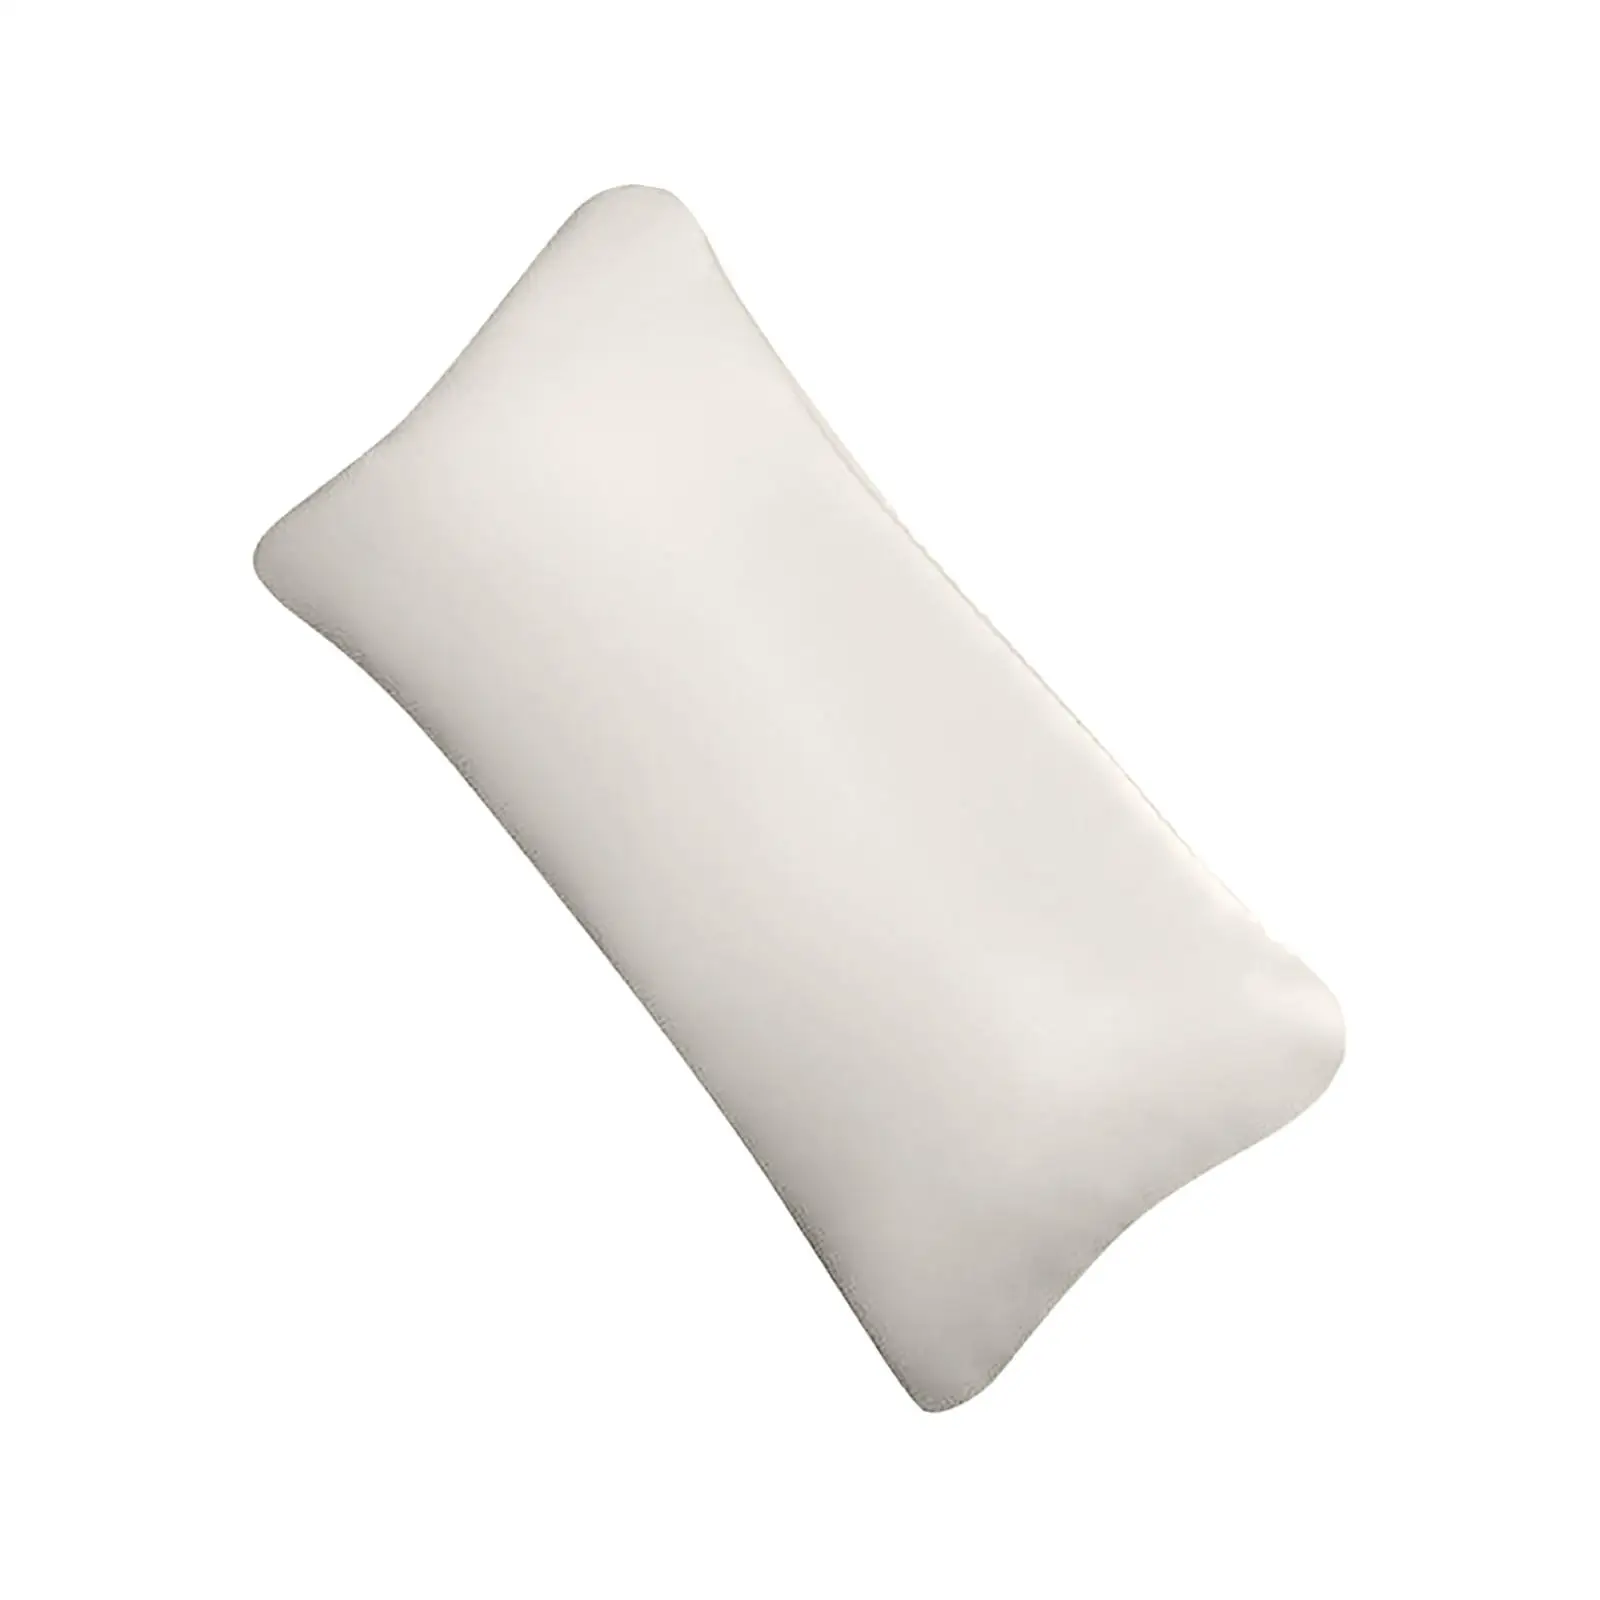 Car Knee Pad Cushion Durable Armrest Cover Cushion for Cars Truck SUV